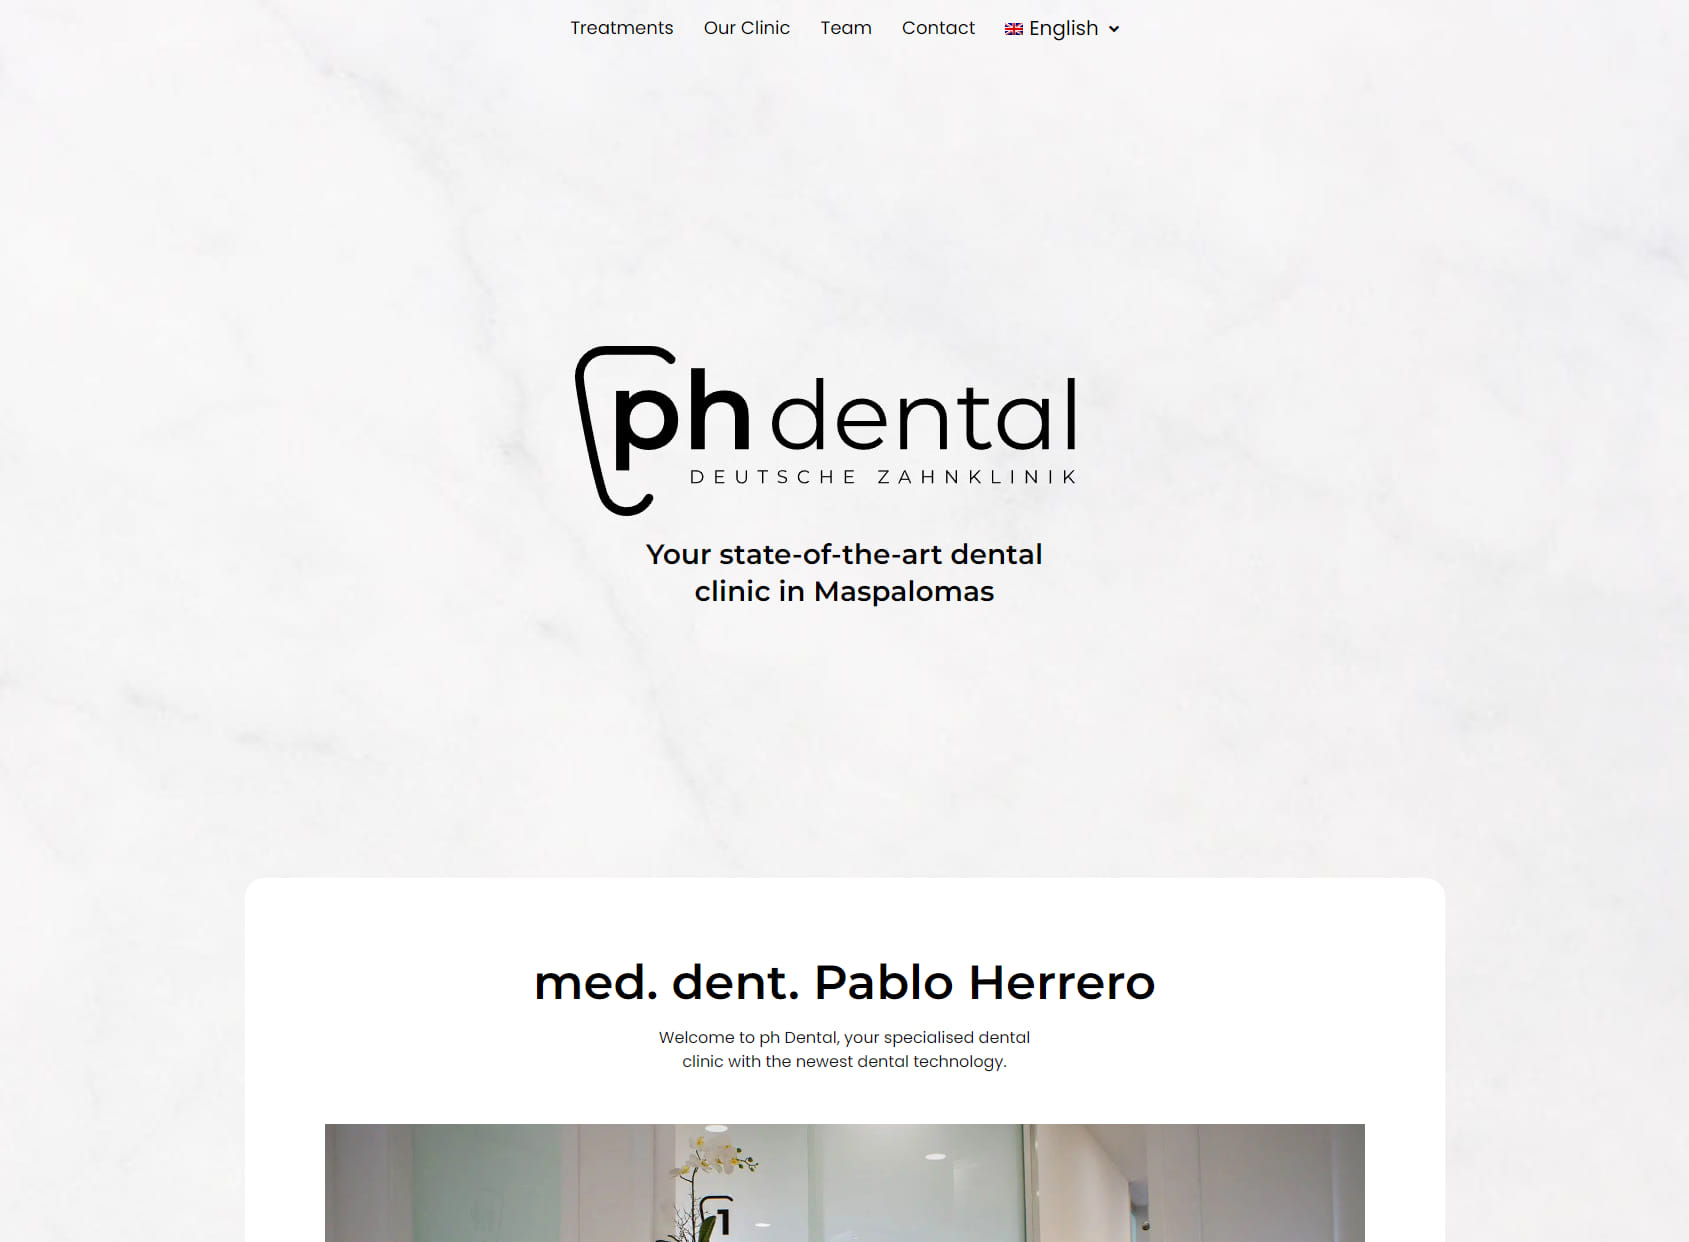 ph dental / med.dent Pablo Herrero